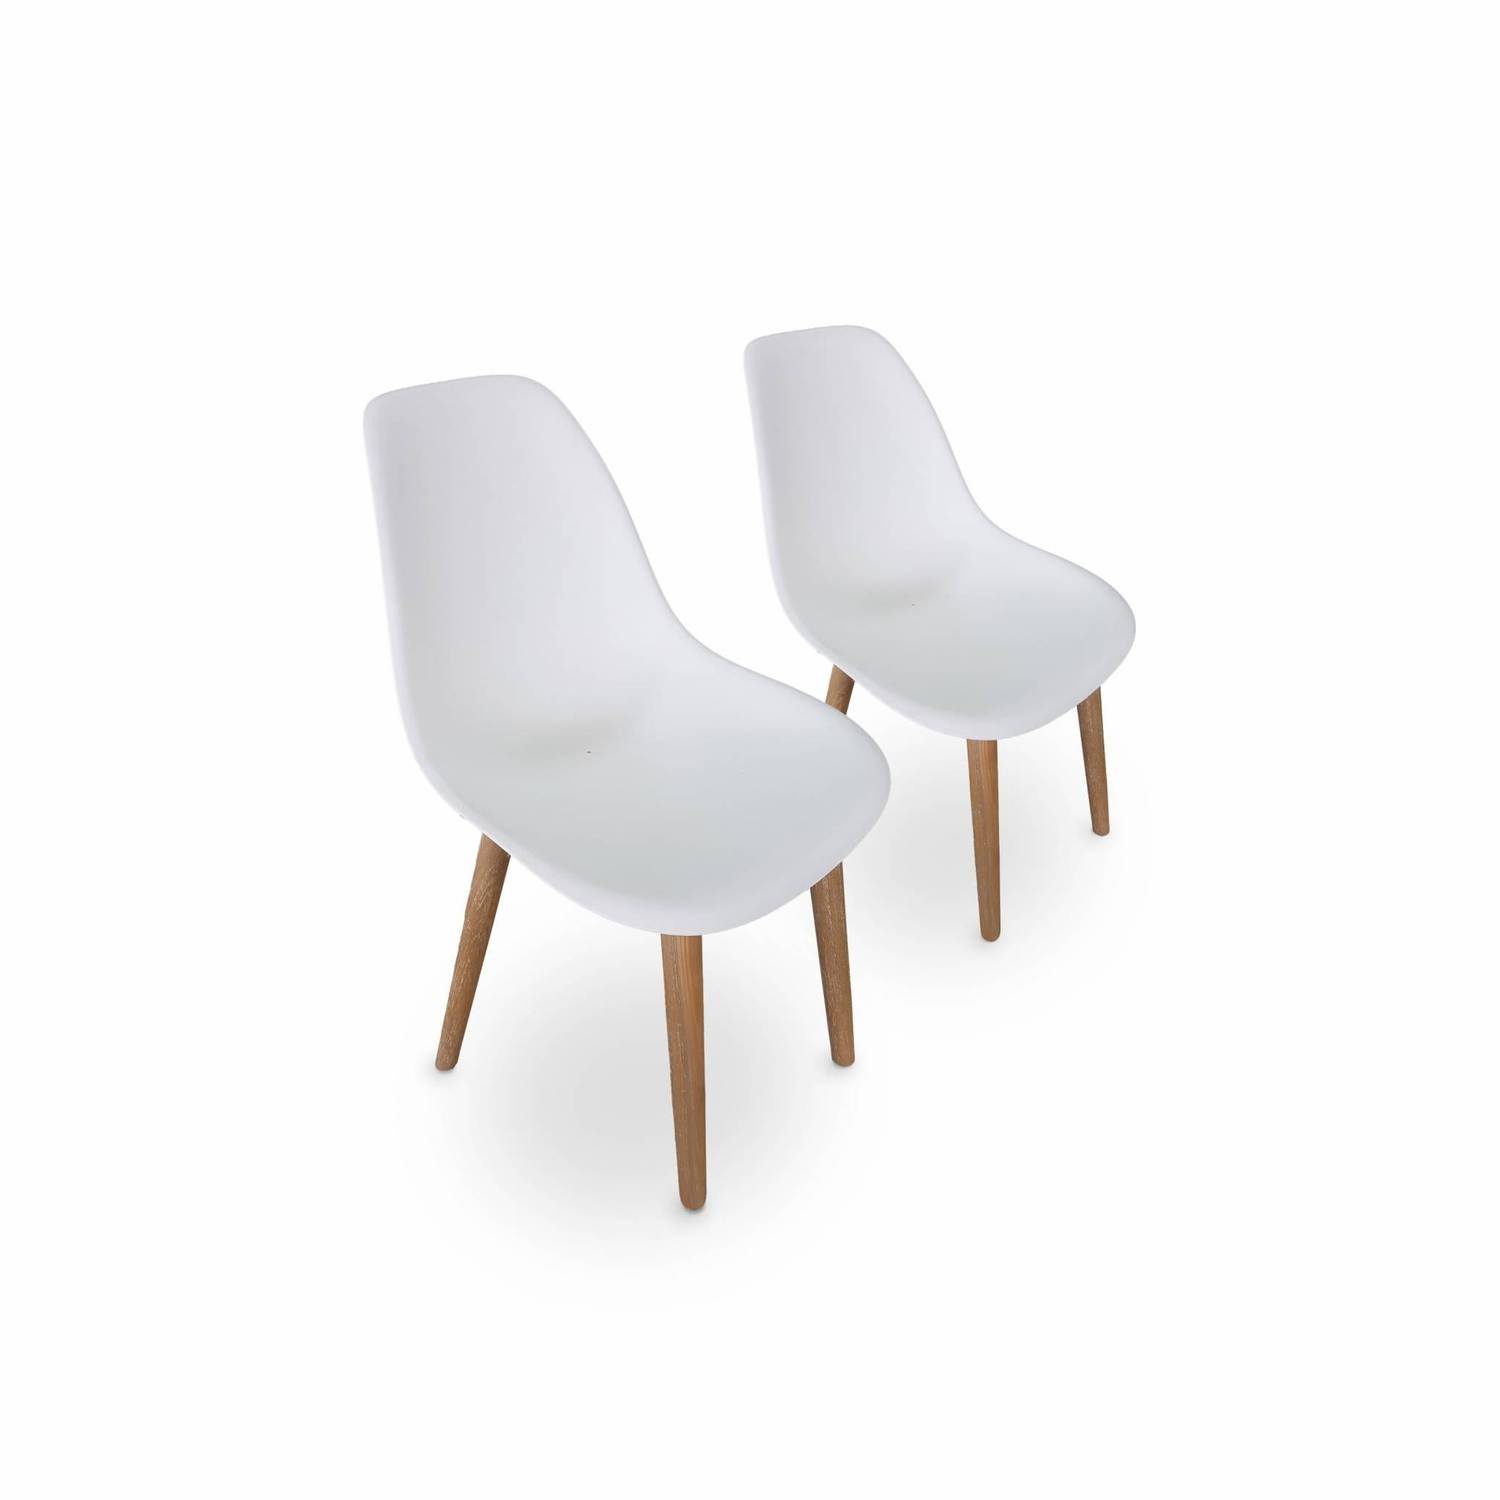 2er Set skandinavische Stühle Penida, aus Akazienholz und weißem Kunstharz gespritzt, innen/außen Photo1